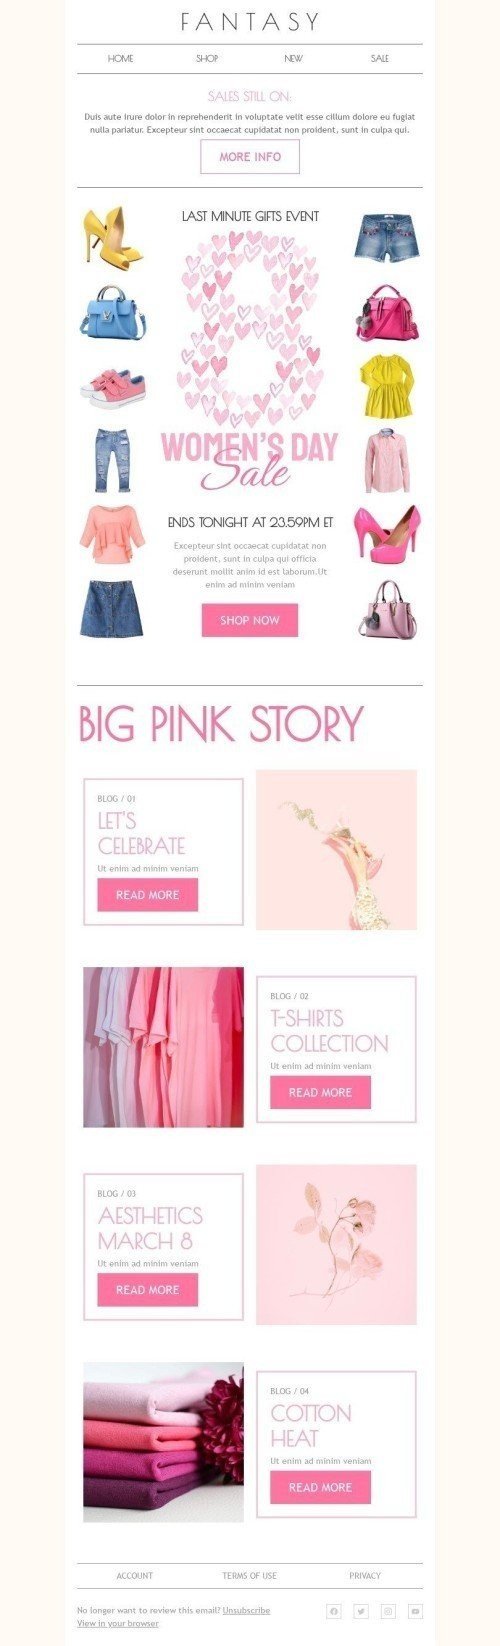 Plantilla de correo electrónico «Gran historia rosa» de Día de la Mujer para la industria de Moda Vista de móvil